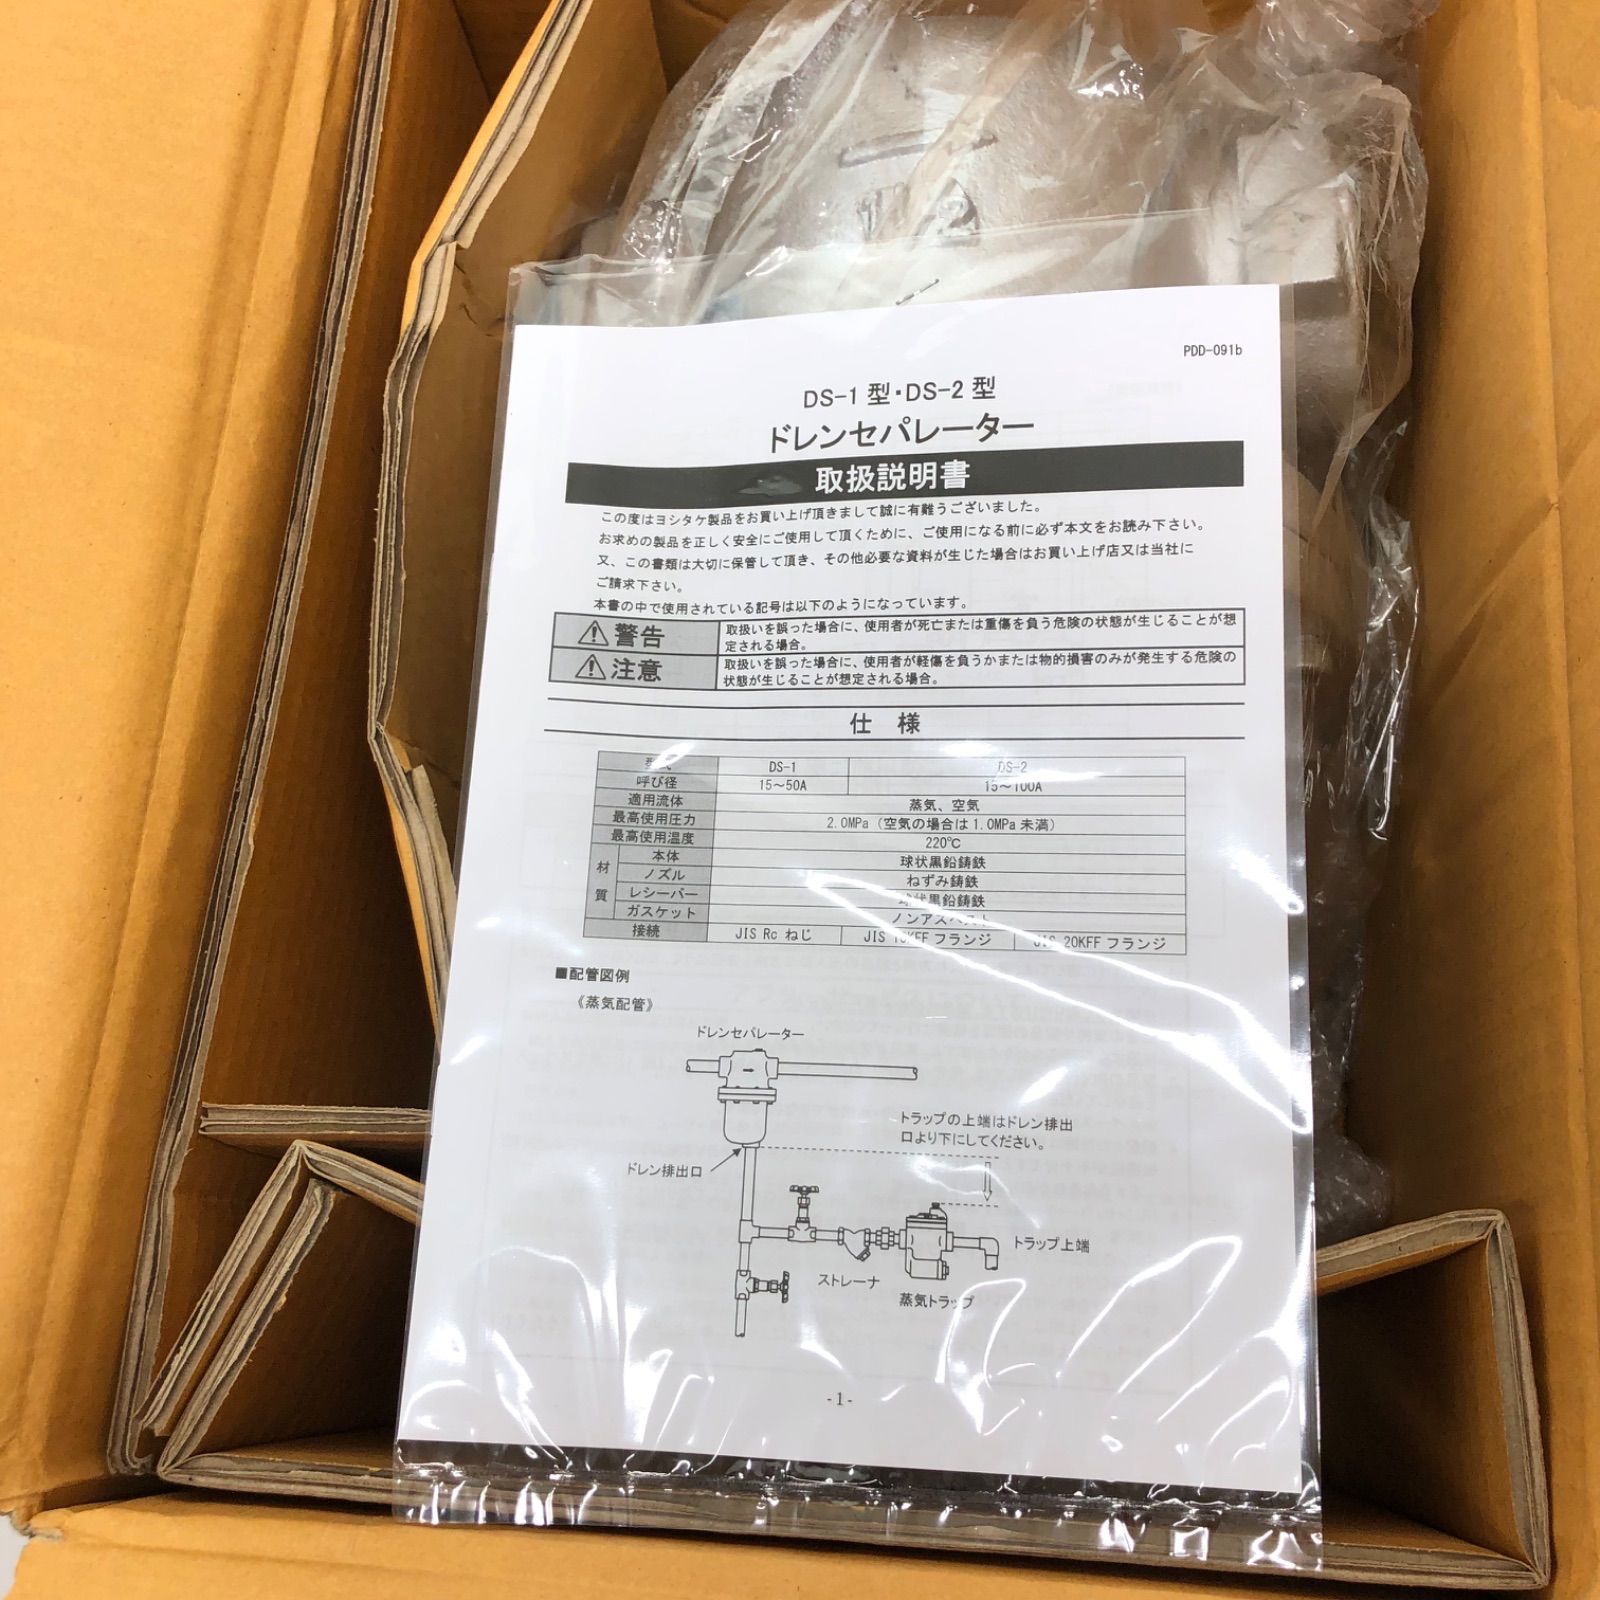 商品追加値下げ在庫復活 ヨシタケ ドレンセパレーター DS-1 50A 1個 直送品